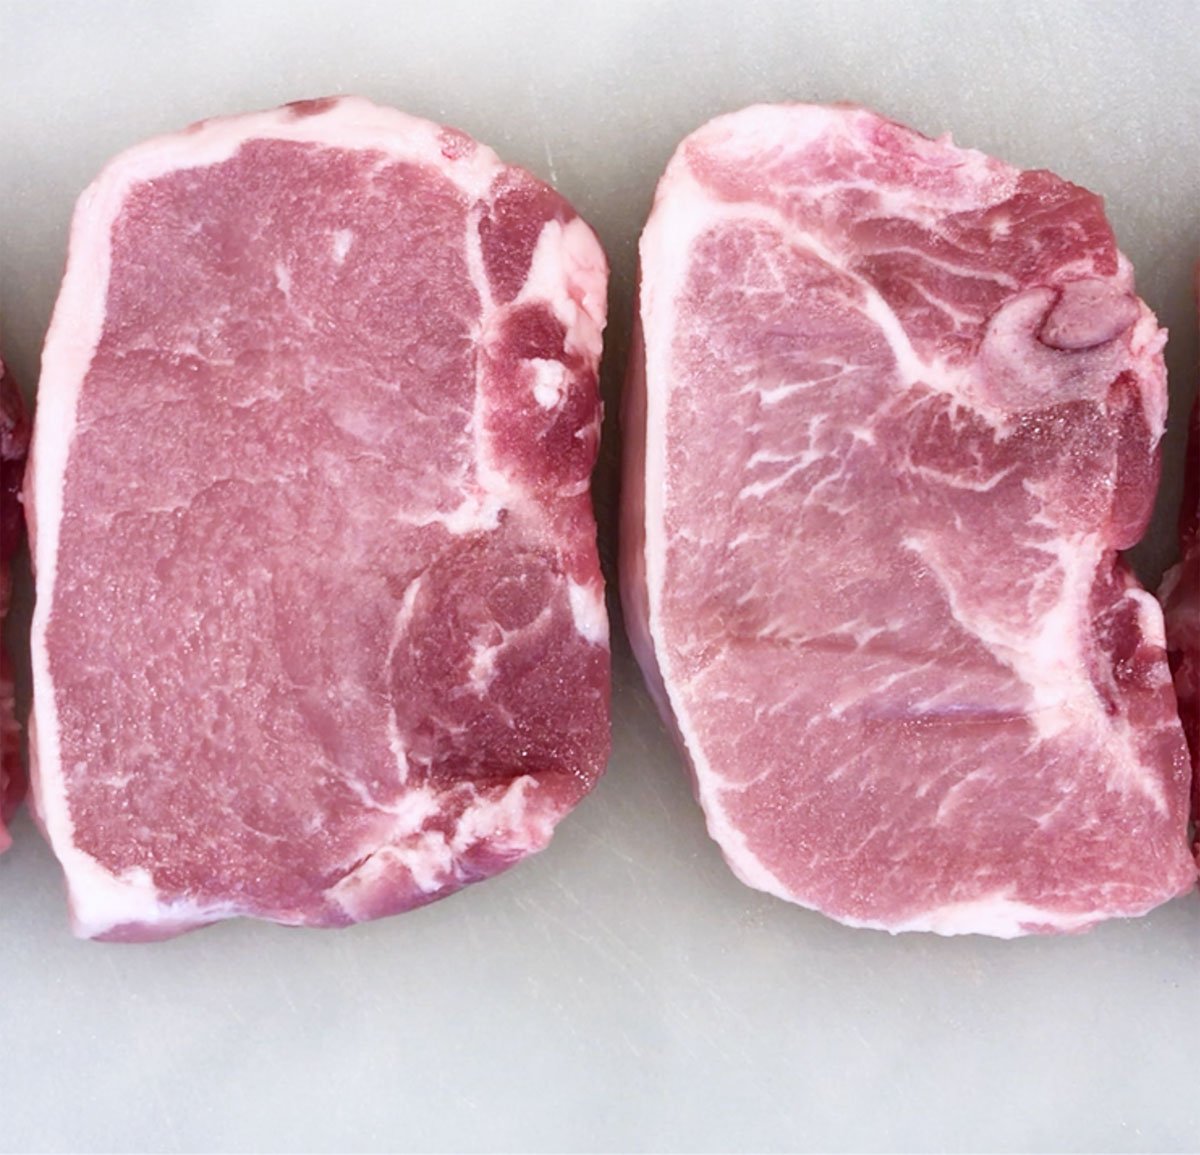 Raw boneless pork chops.